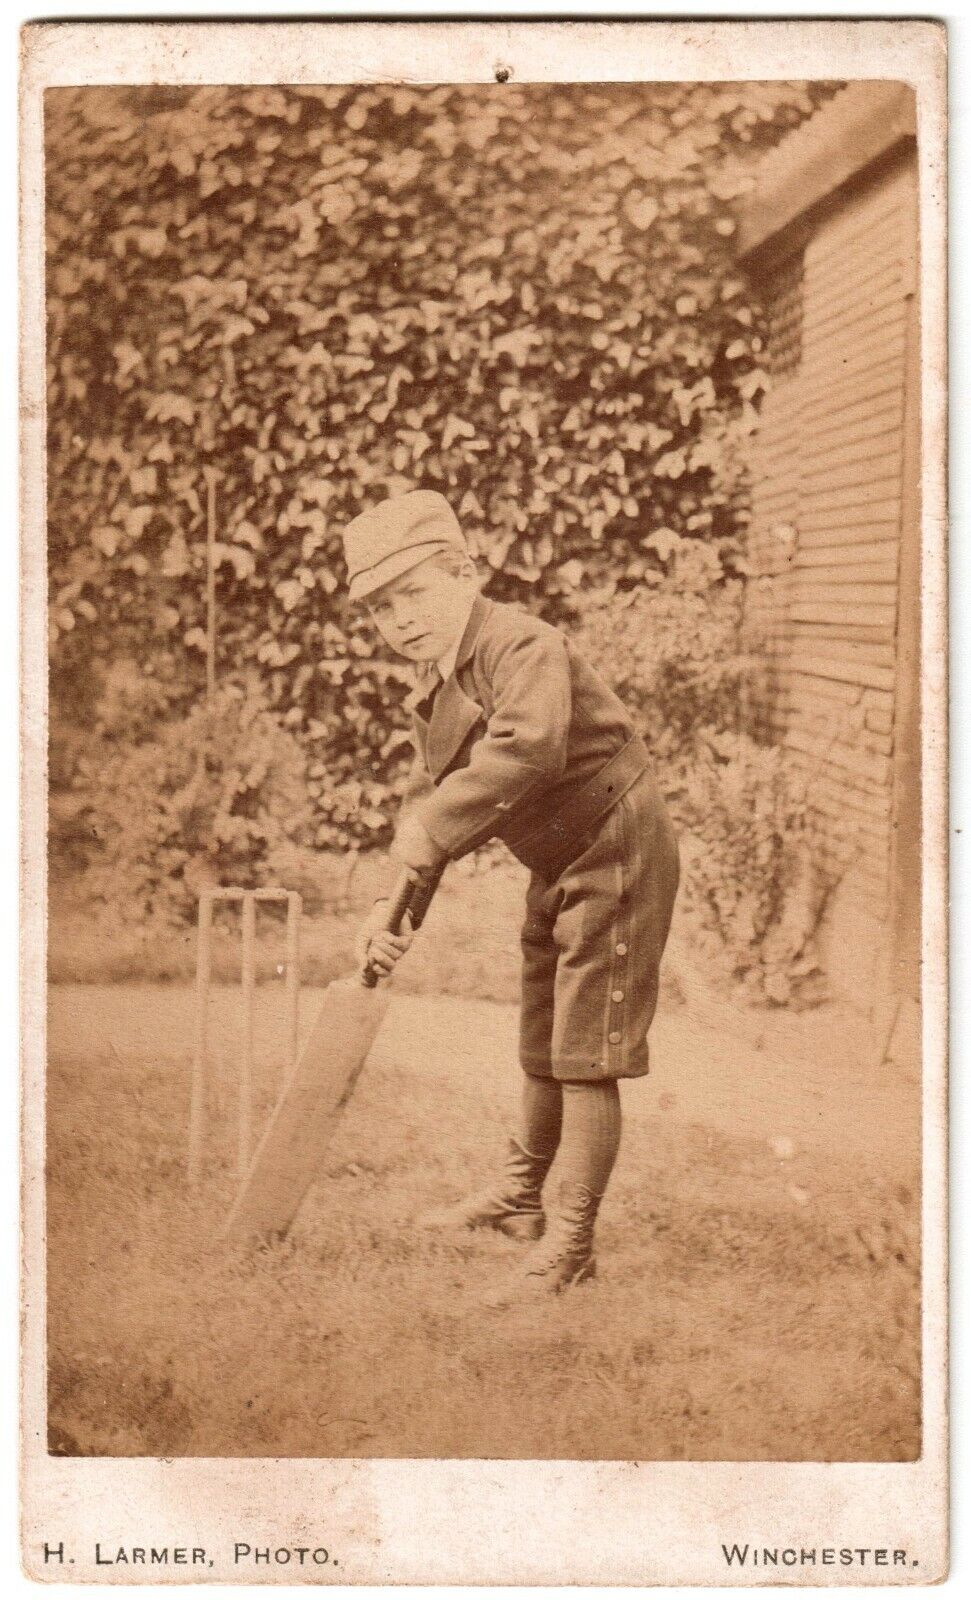 Rare Outdoor Photo H.Larmer Winchester England Boy Cricket Player.Sport.1865 CDV